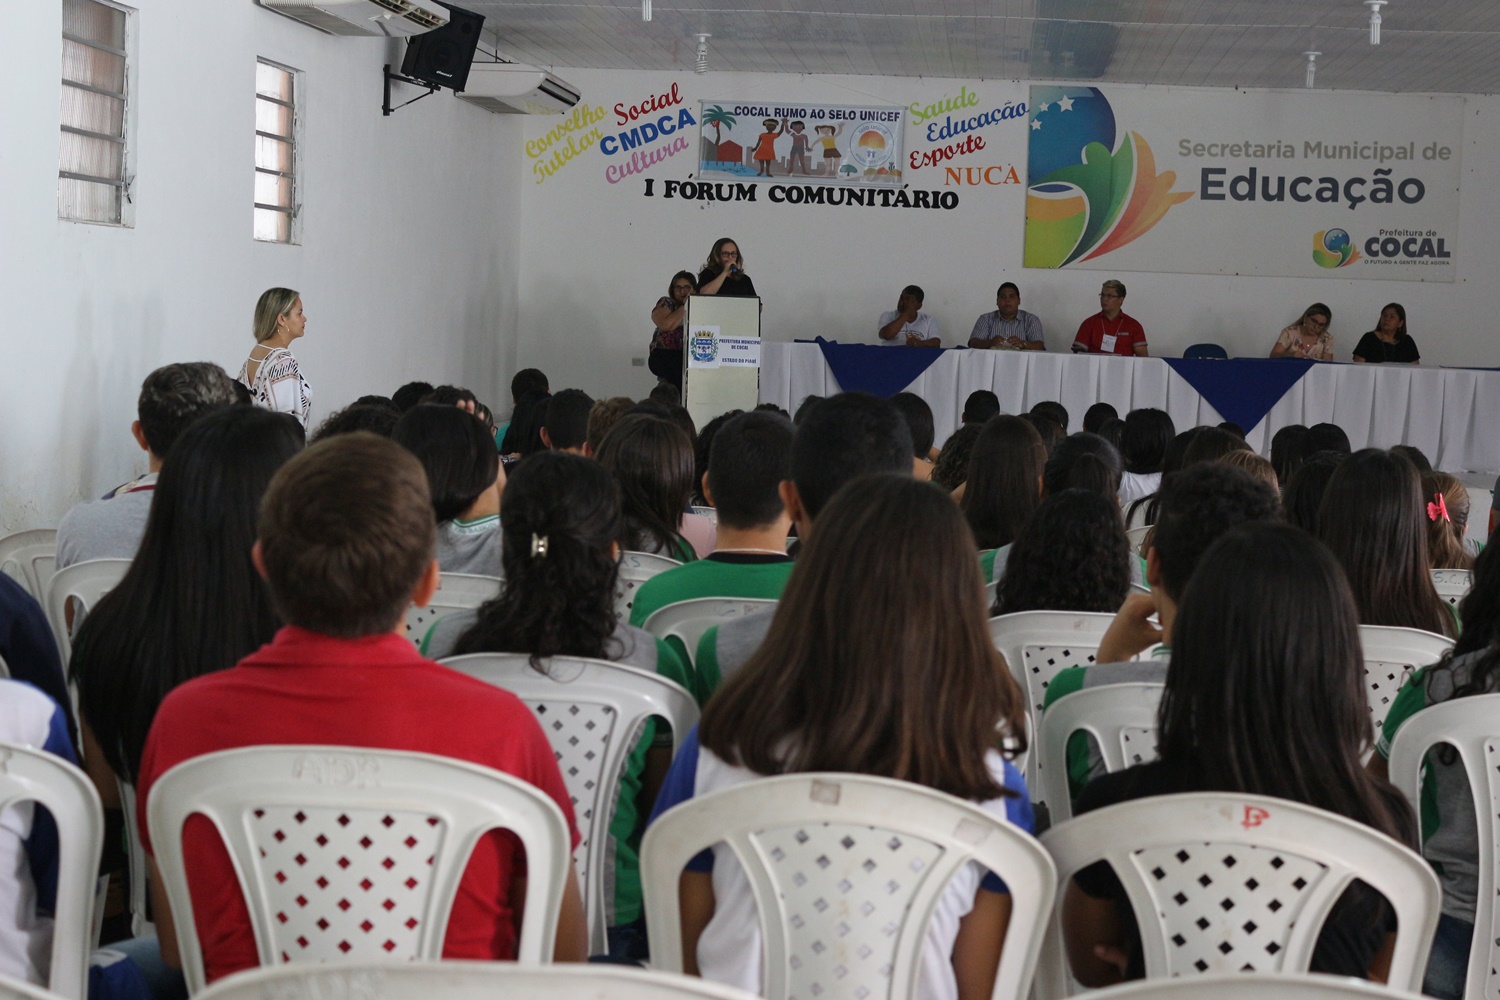 Prefeitura de Cocal realiza Fórum Comunitário do Selo Unicef